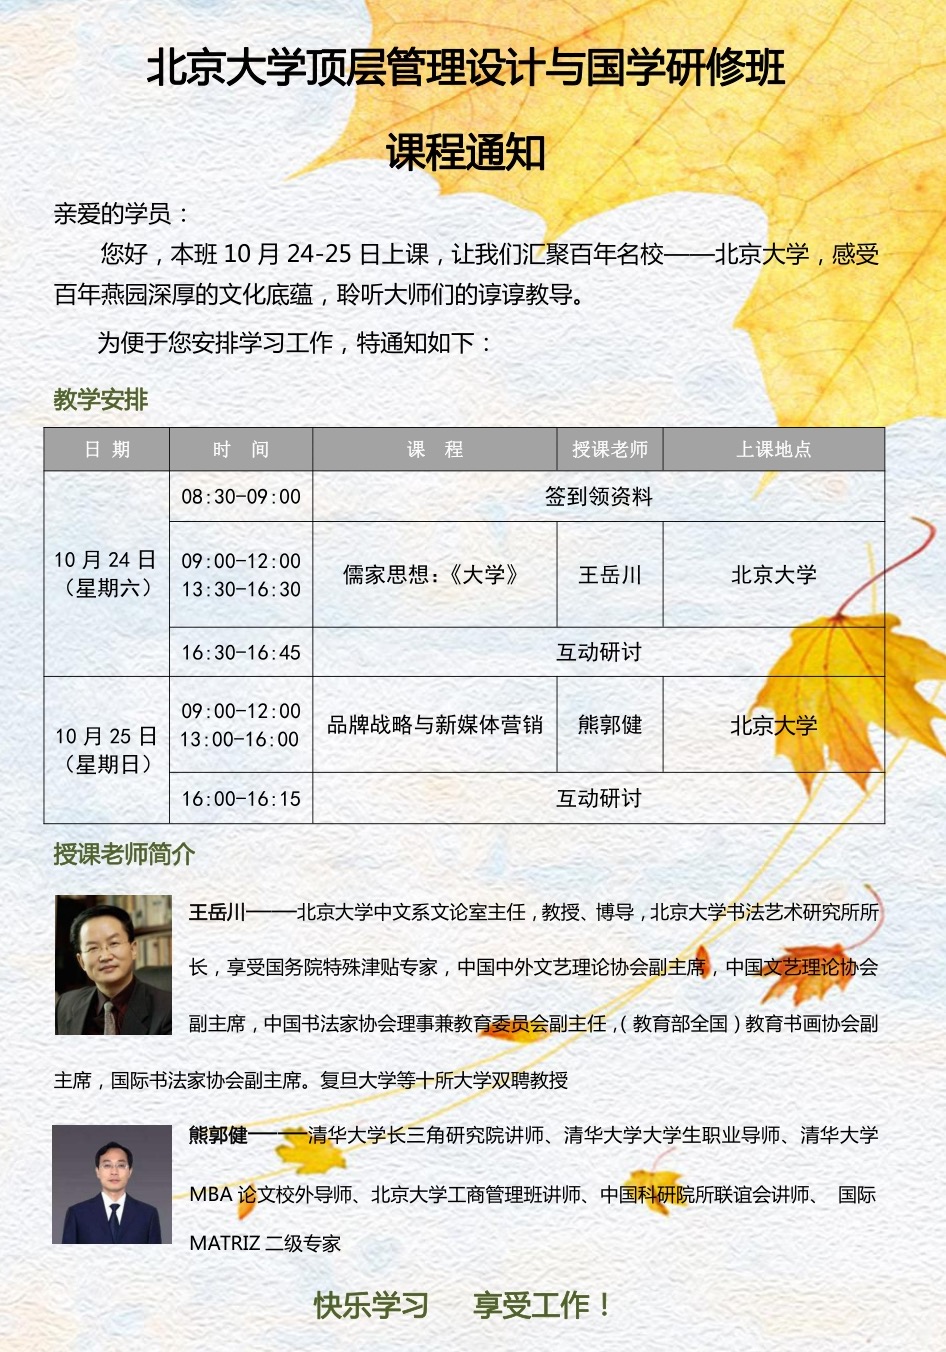 2020年10月北京大学顶层管理设计与国学研修班开课课表